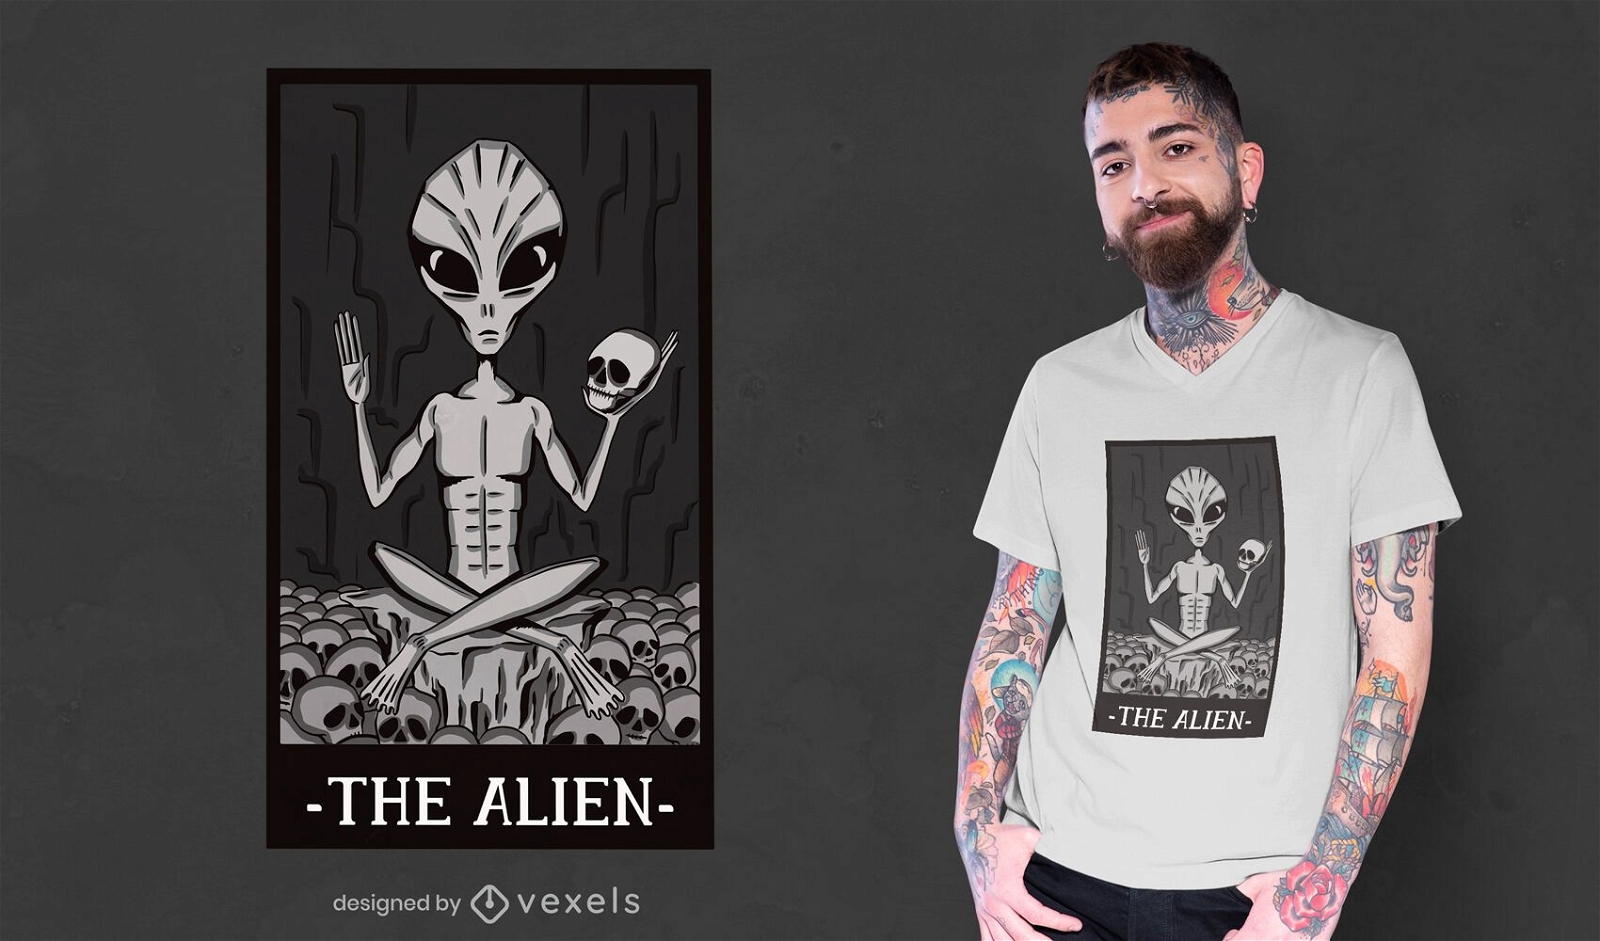 El dise?o de la camiseta de la tarjeta alien?gena.